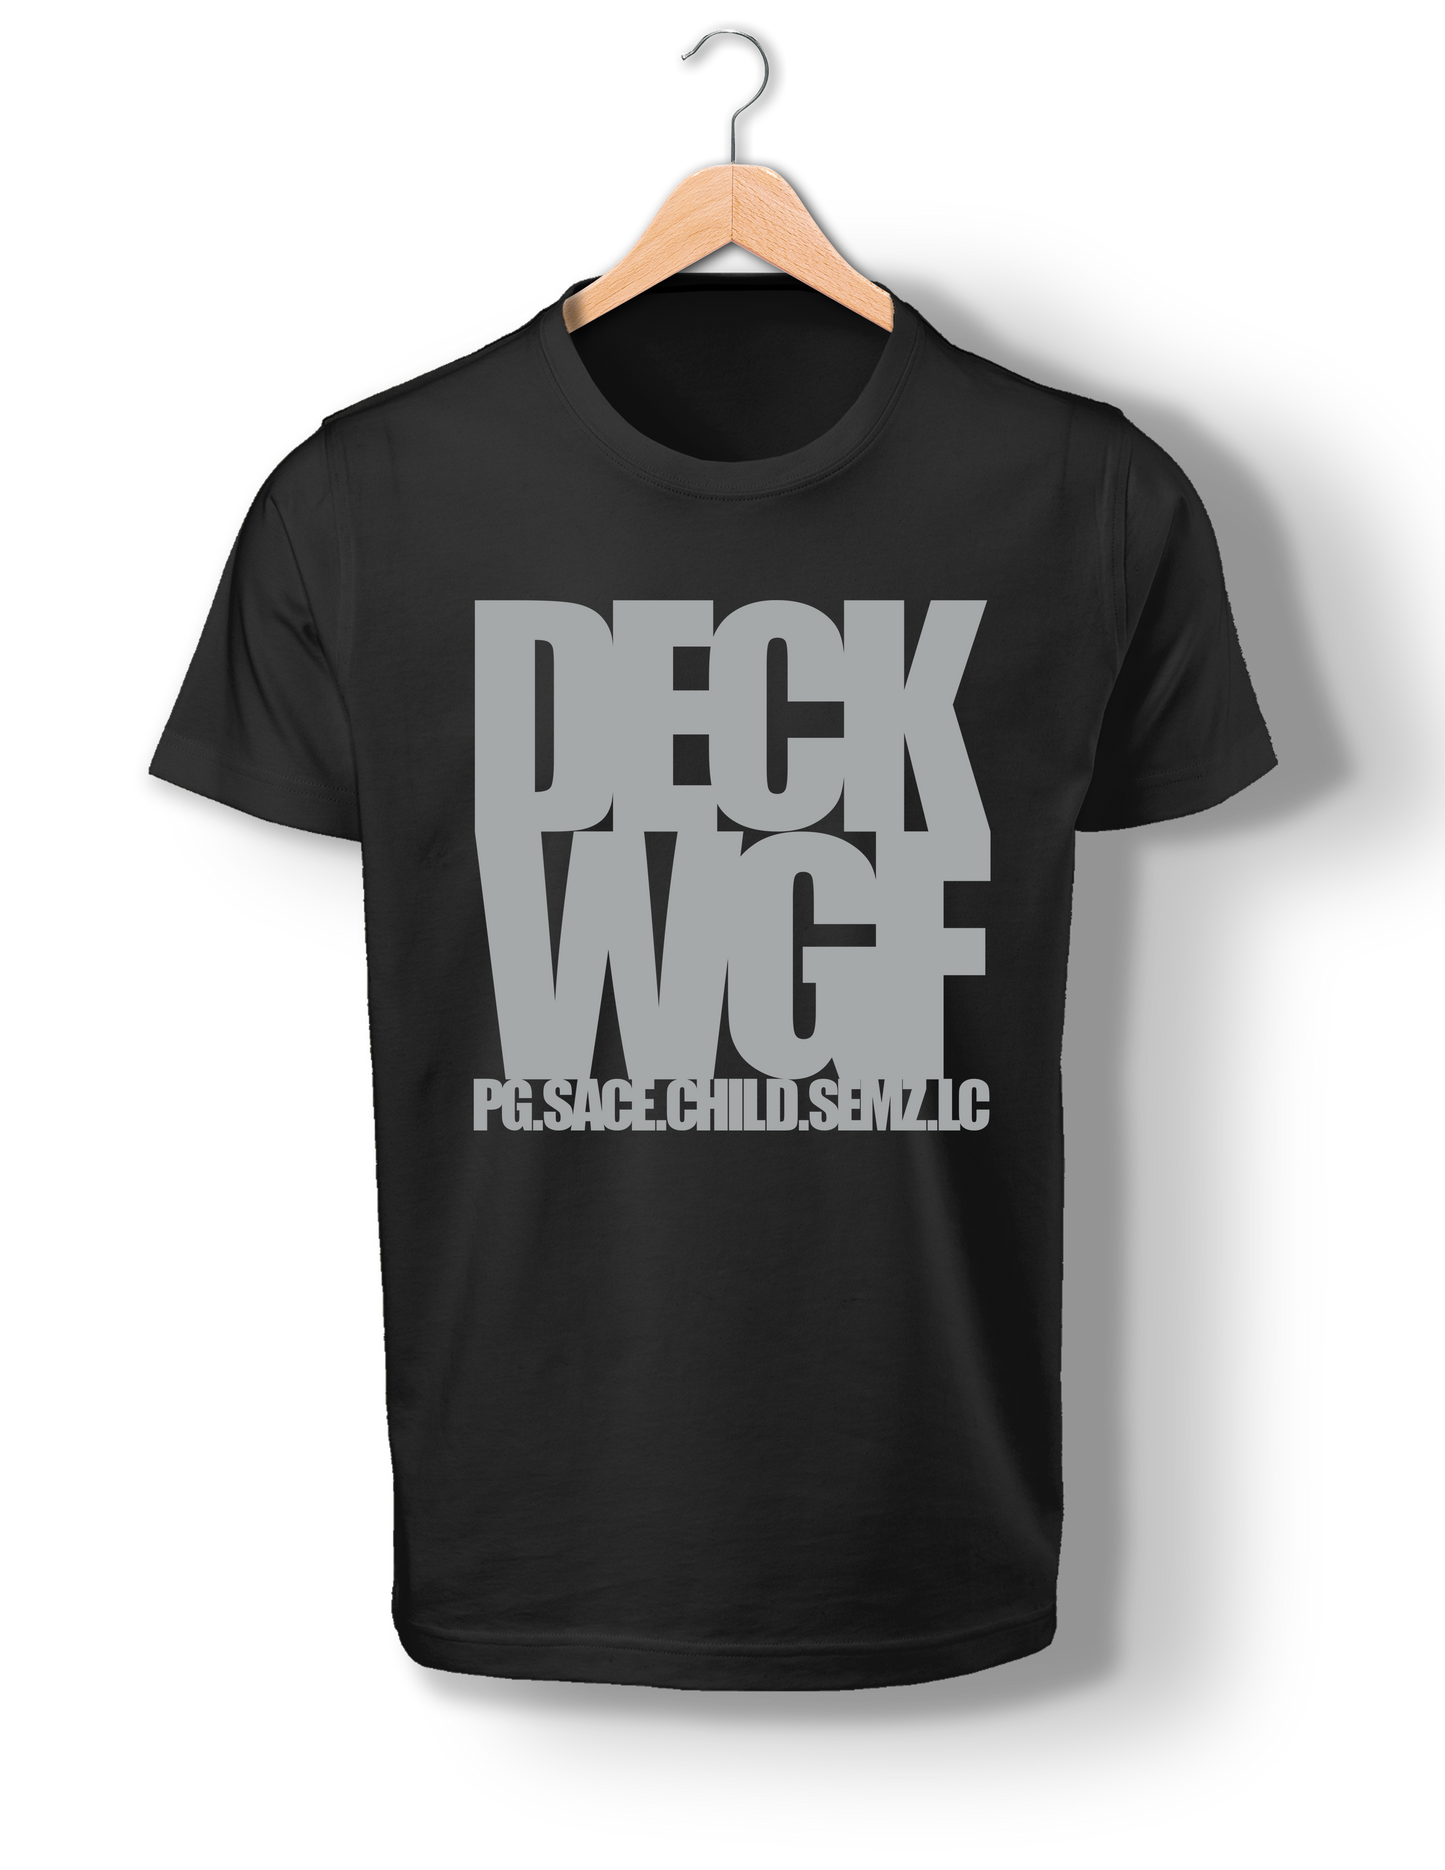 DECK WGF BlockBuster T-Shirt